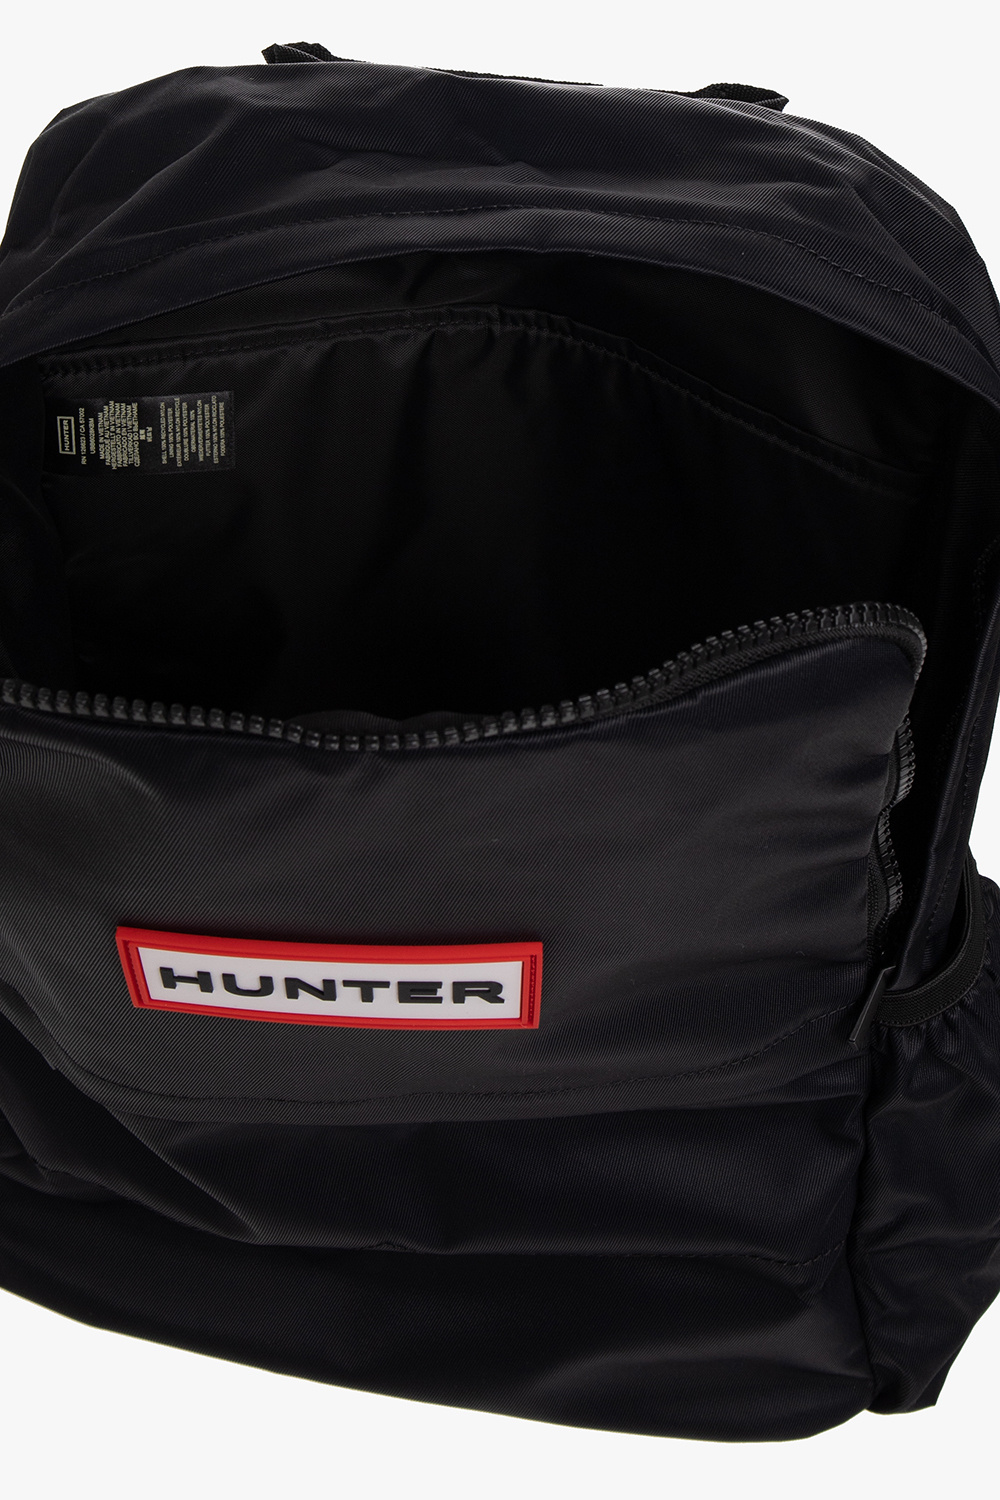 Hunter balmain b army 22 camera bag item